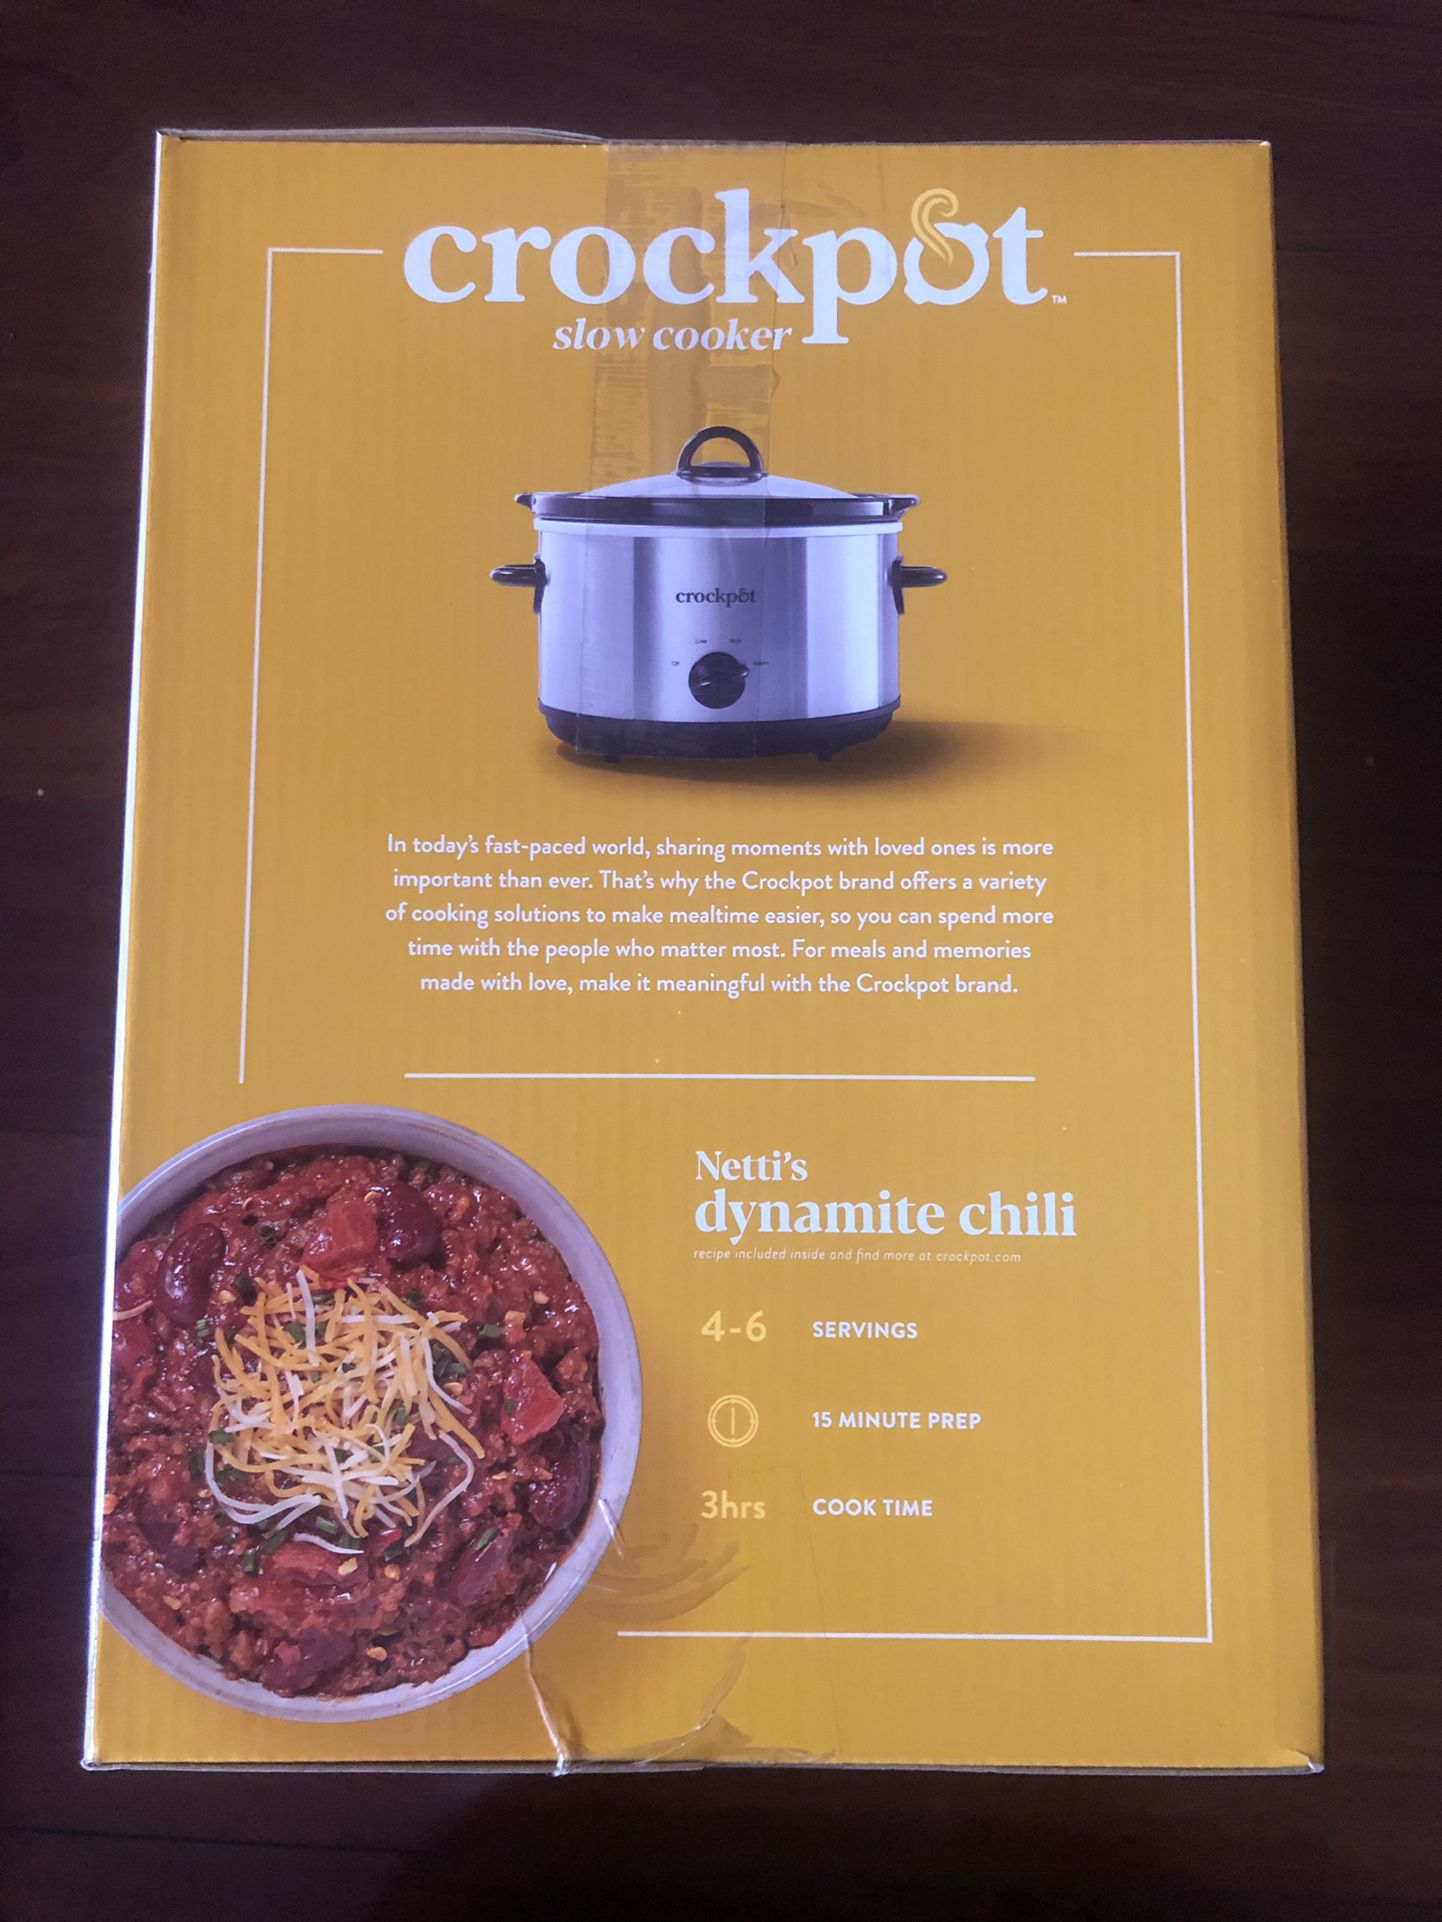 The Crockpot Brand